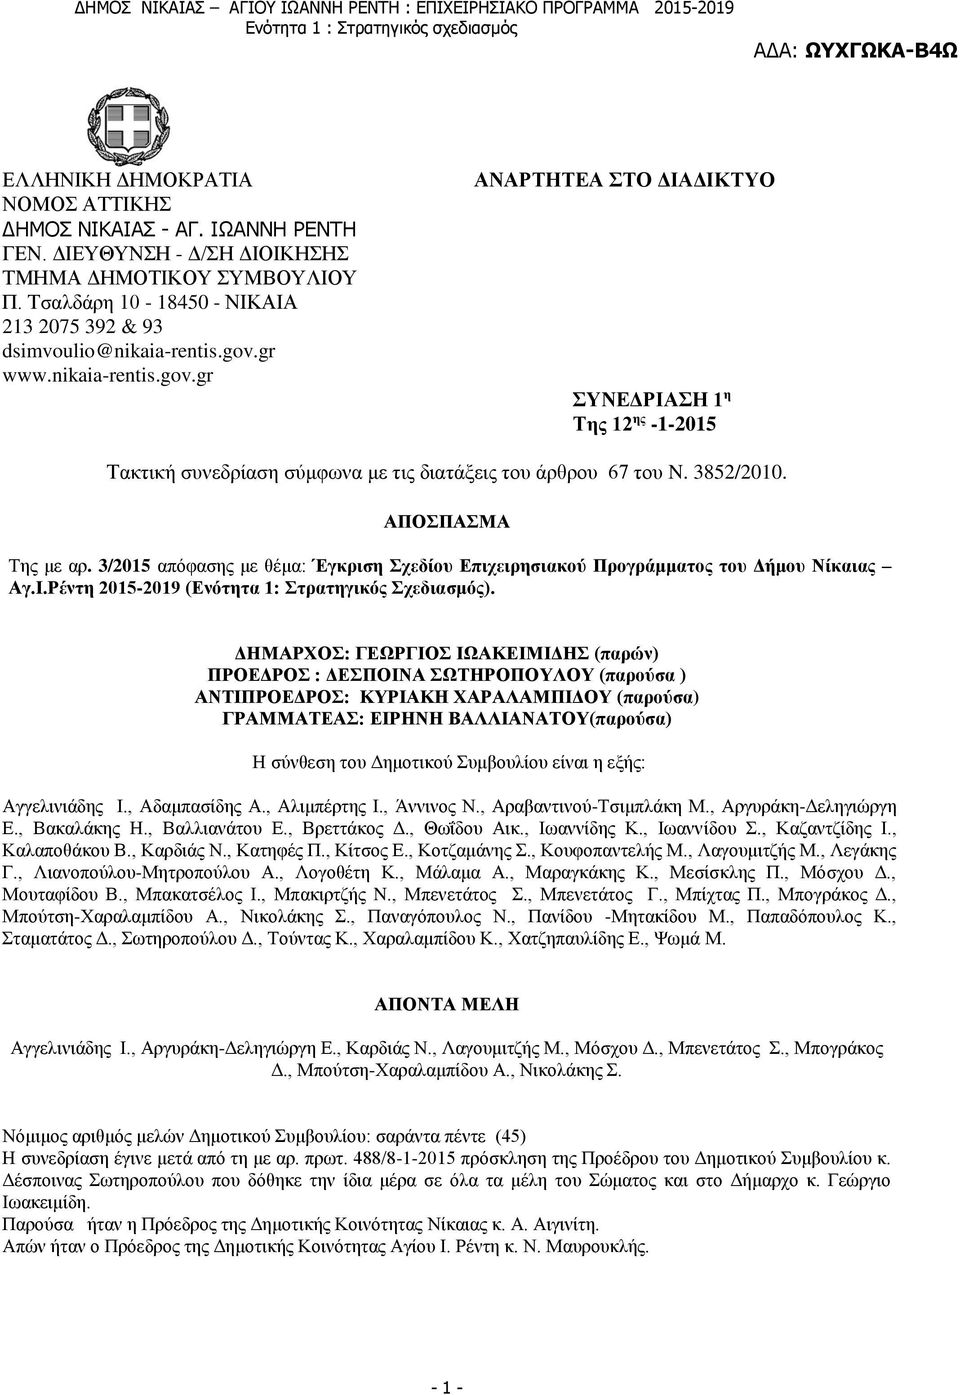 3/2015 απόφασης με θέμα: Έγκριση Σχεδίου Επιχειρησιακού Προγράμματος του Δήμου Νίκαιας Αγ.Ι.Ρέντη 2015-2019 (Ενότητα 1: Στρατηγικός Σχεδιασμός).